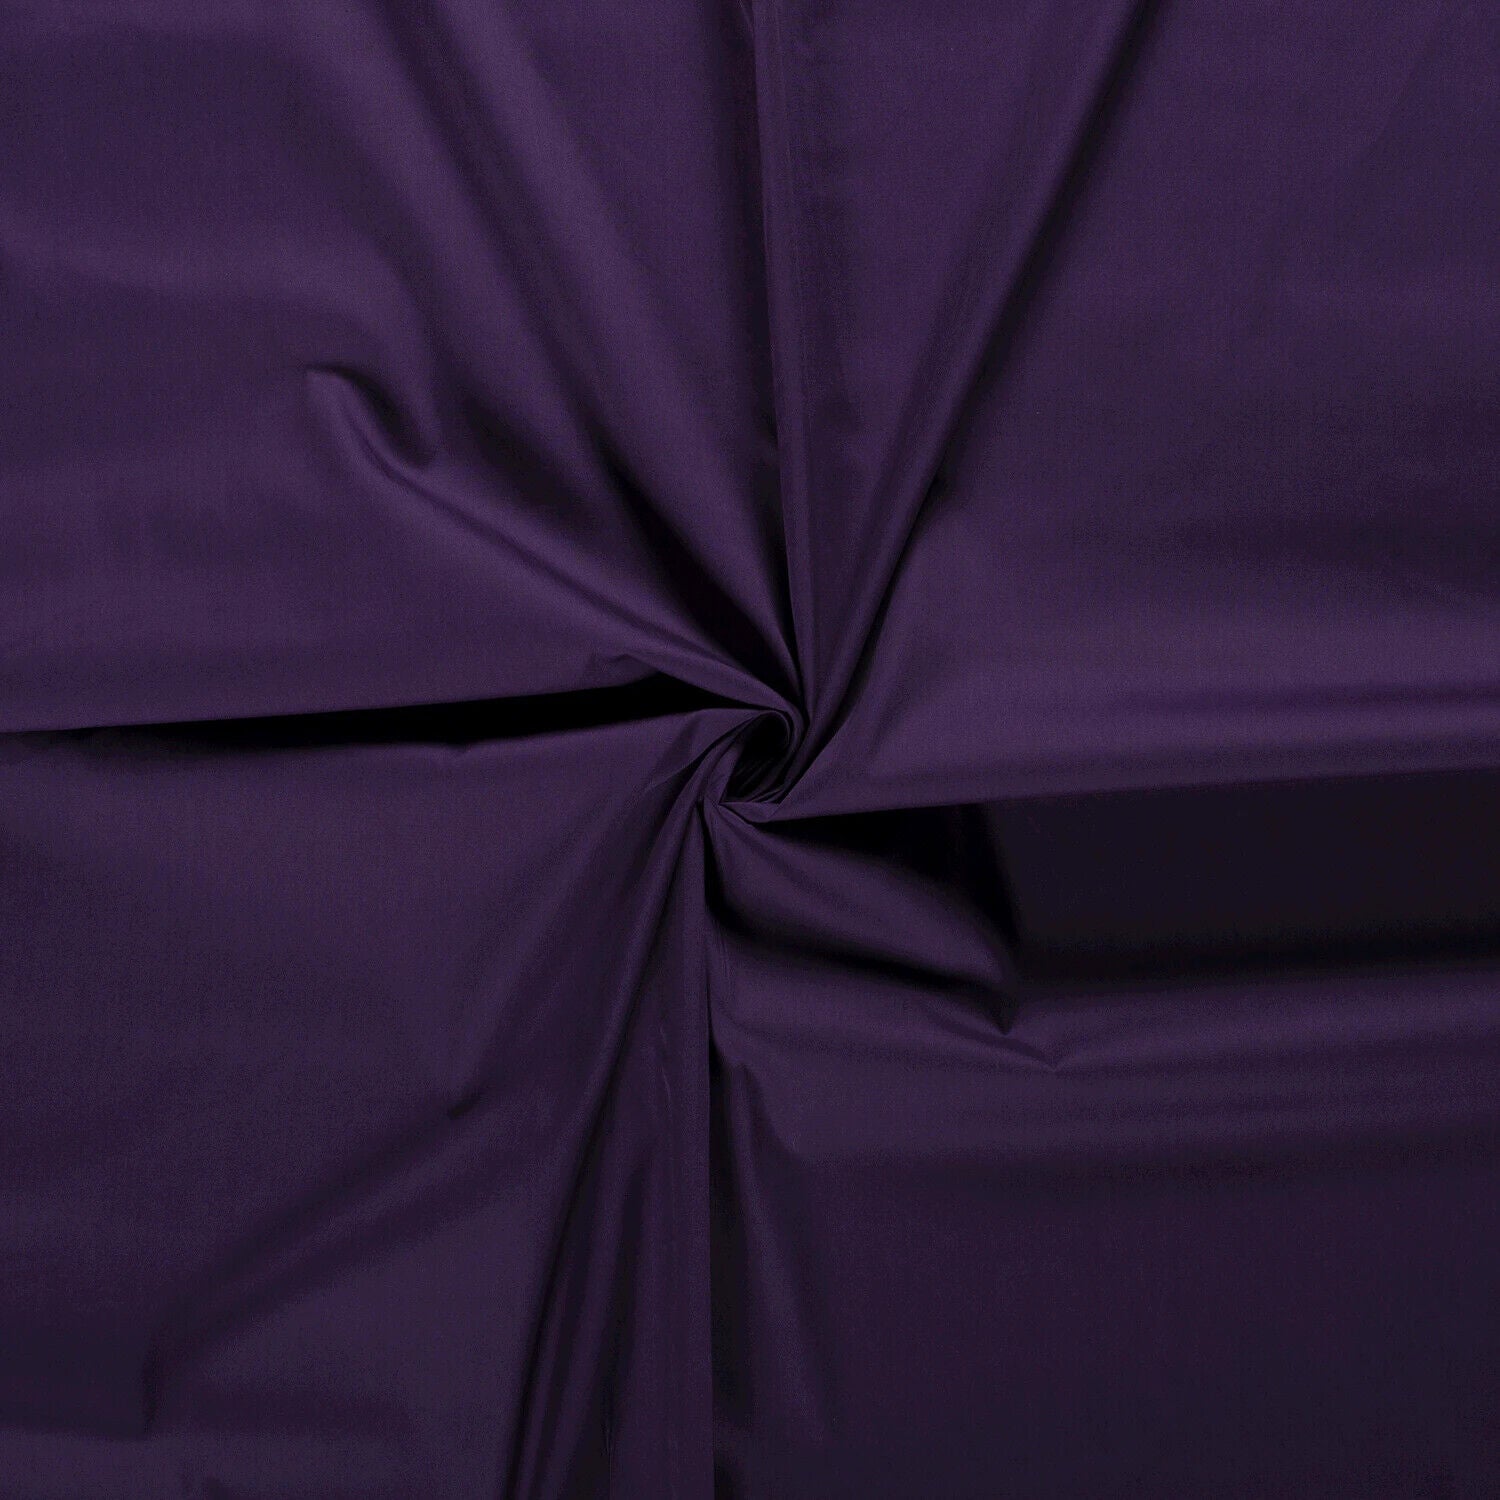 Buy 045-purple Cotton poplin * From 50 cm